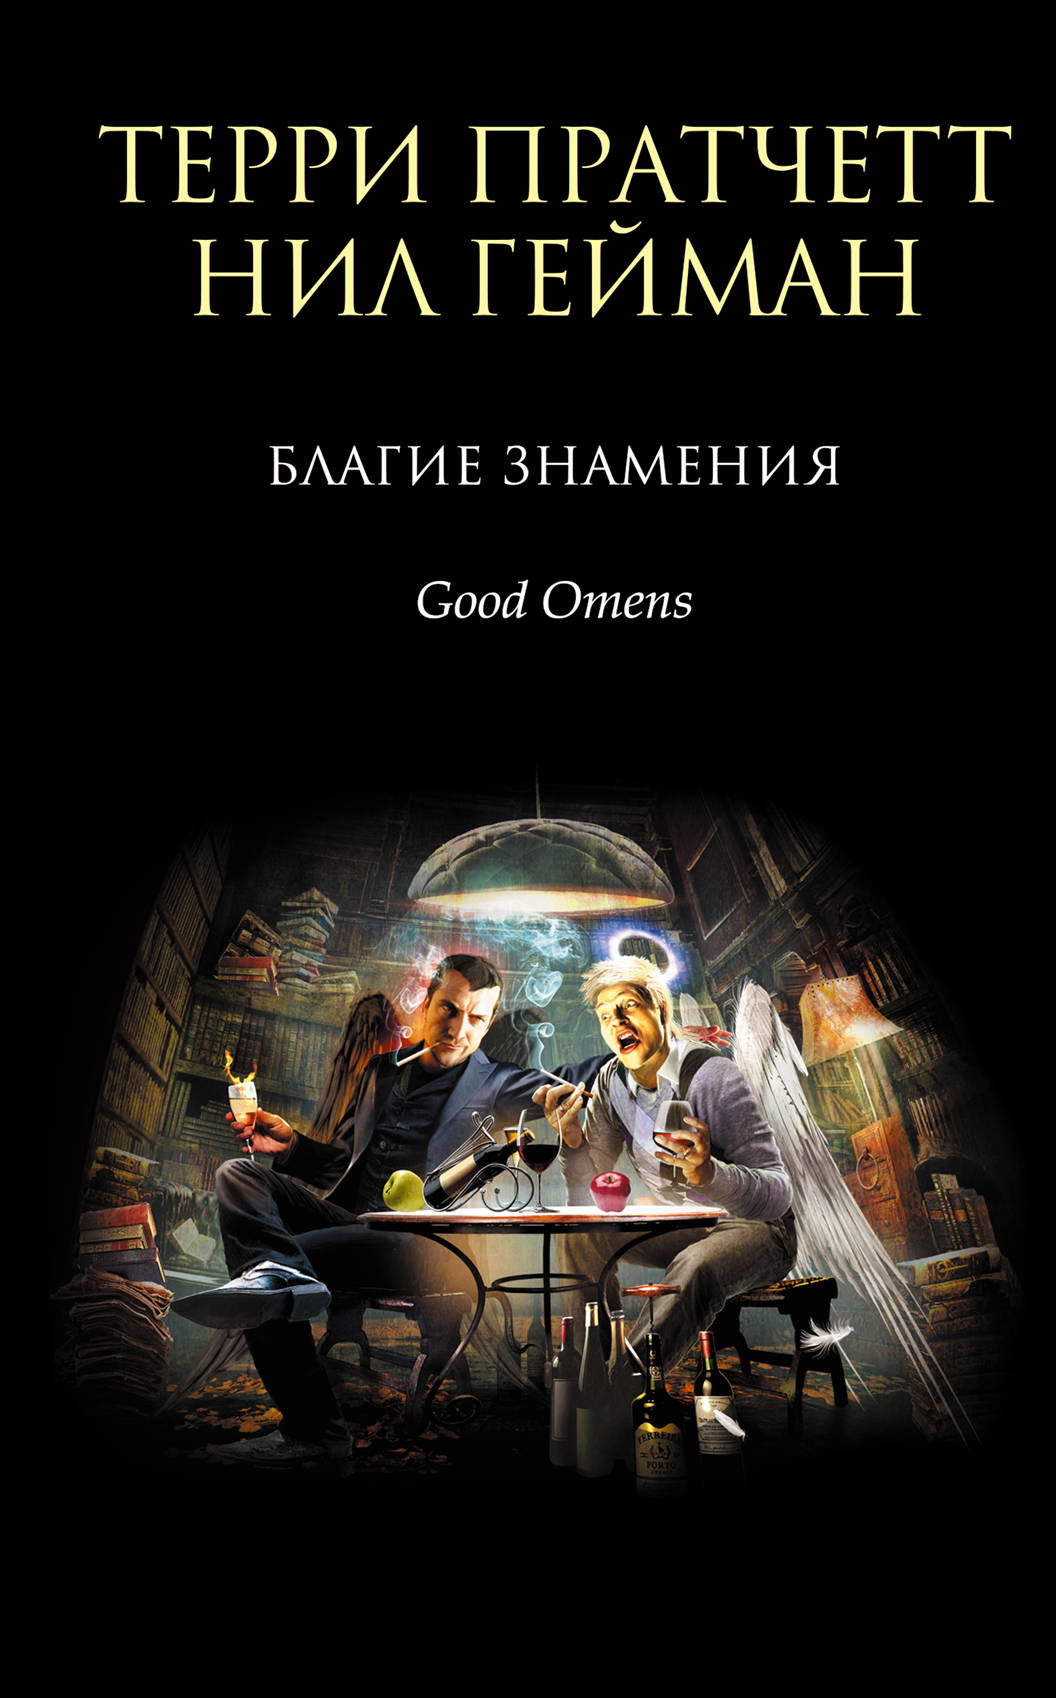 Book “Благие знамения” by Терри Пратчетт, Нил Гейман